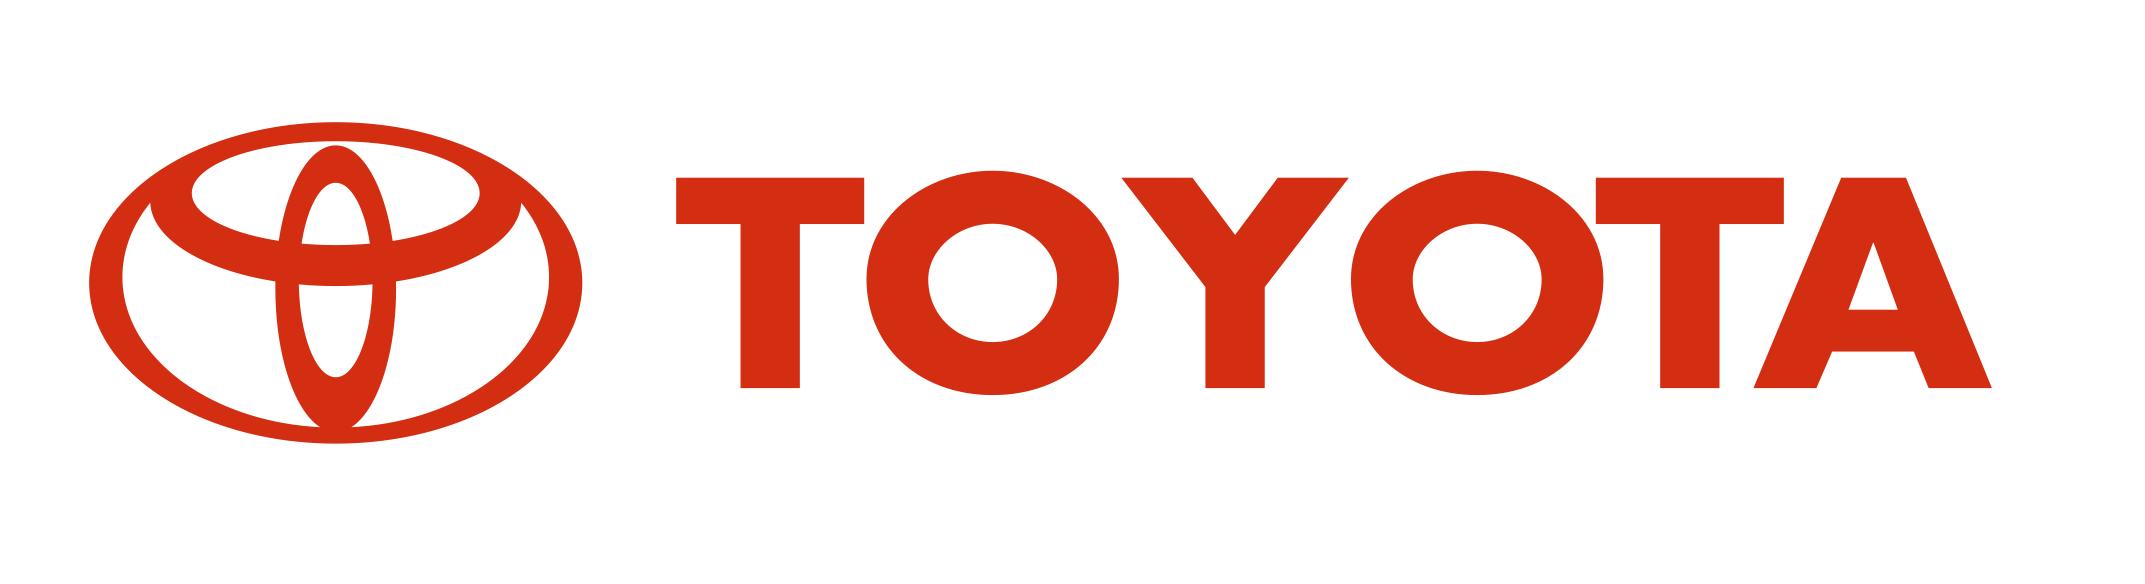 Toyota de Venezuela invitada a participar en 500 años de Cumaná